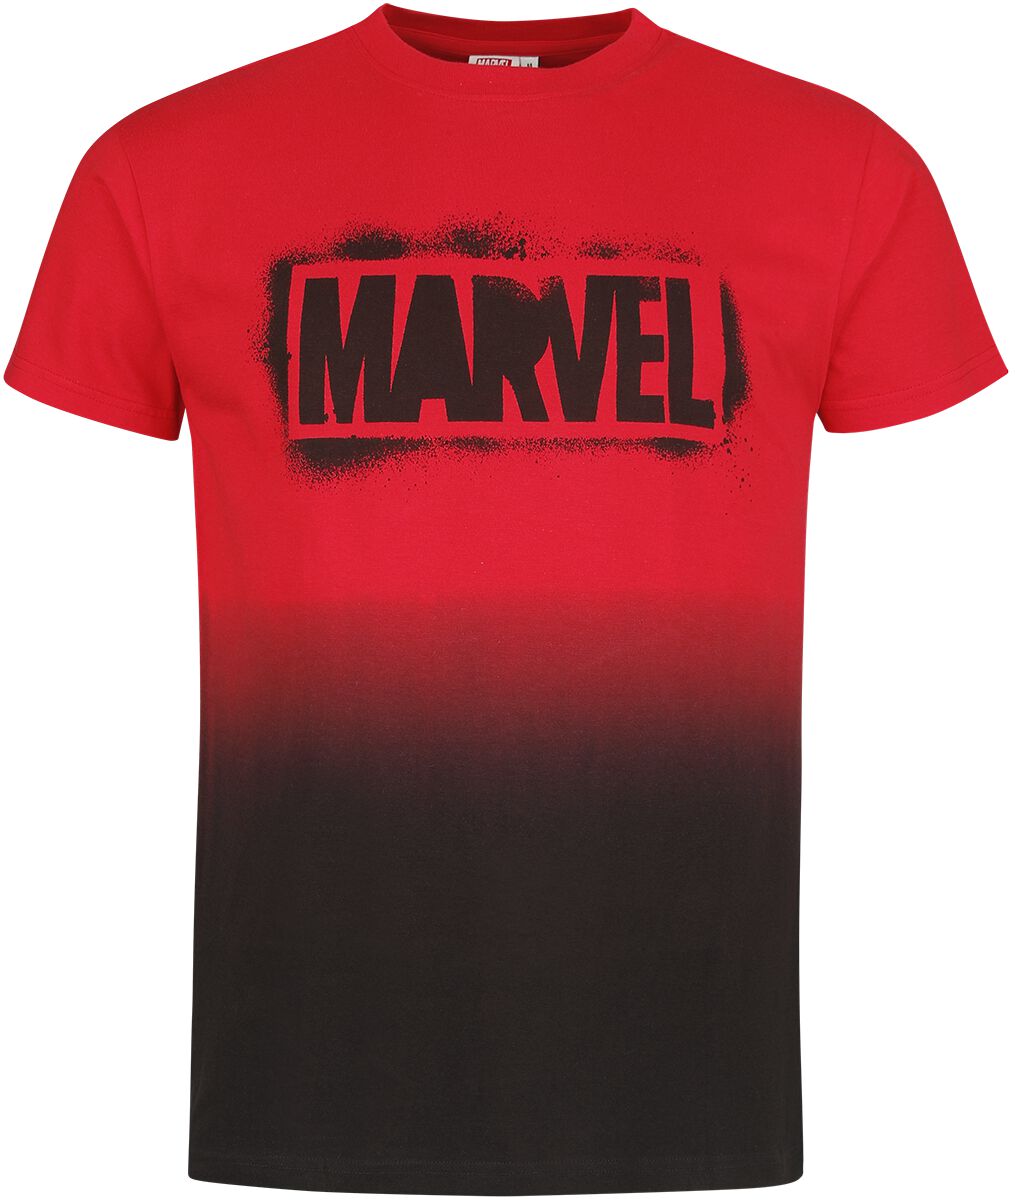 Marvel - Marvel T-Shirt - Logo - S bis XXL - für Männer - Größe L - multicolor  - EMP exklusives Merchandise!